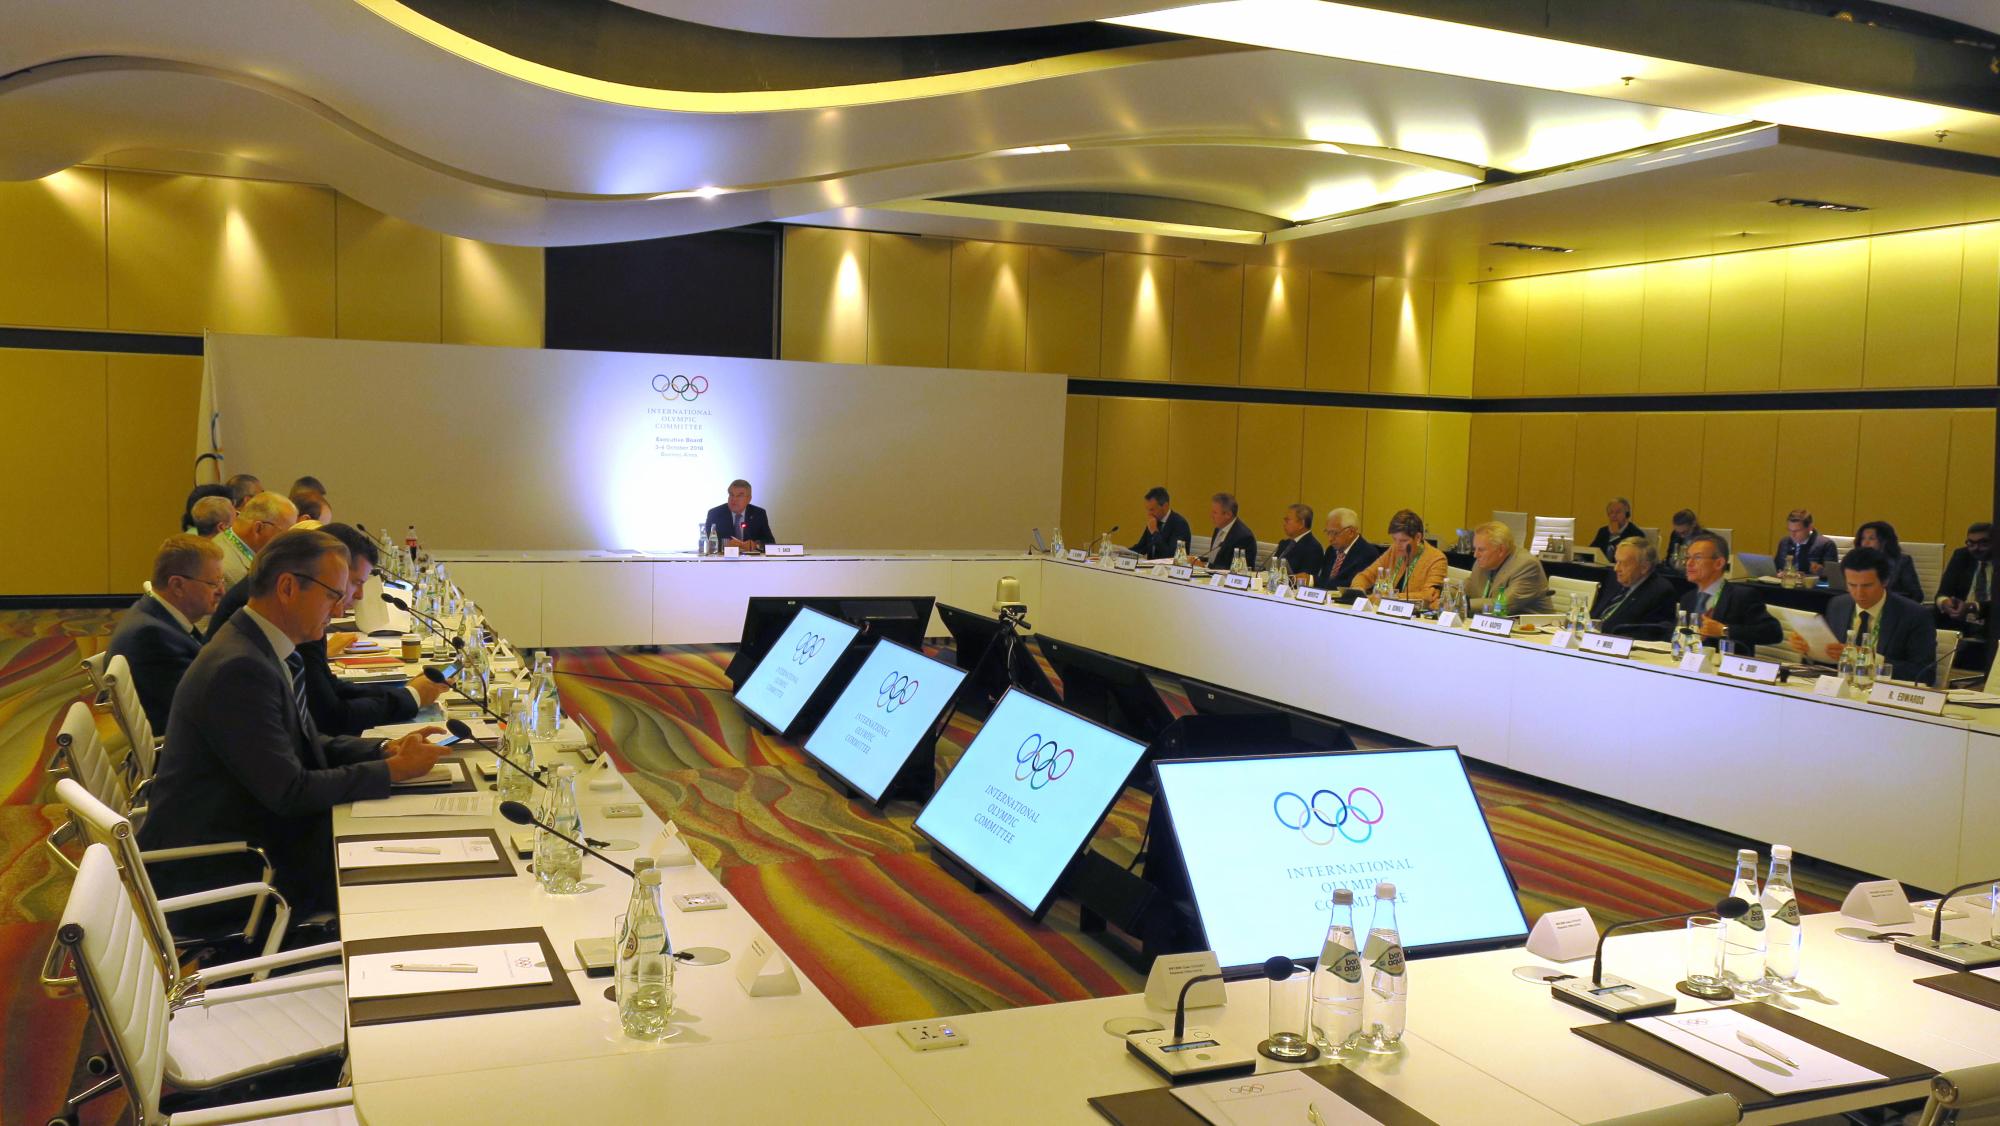 Reunión del Comité Olímpico Internacional 